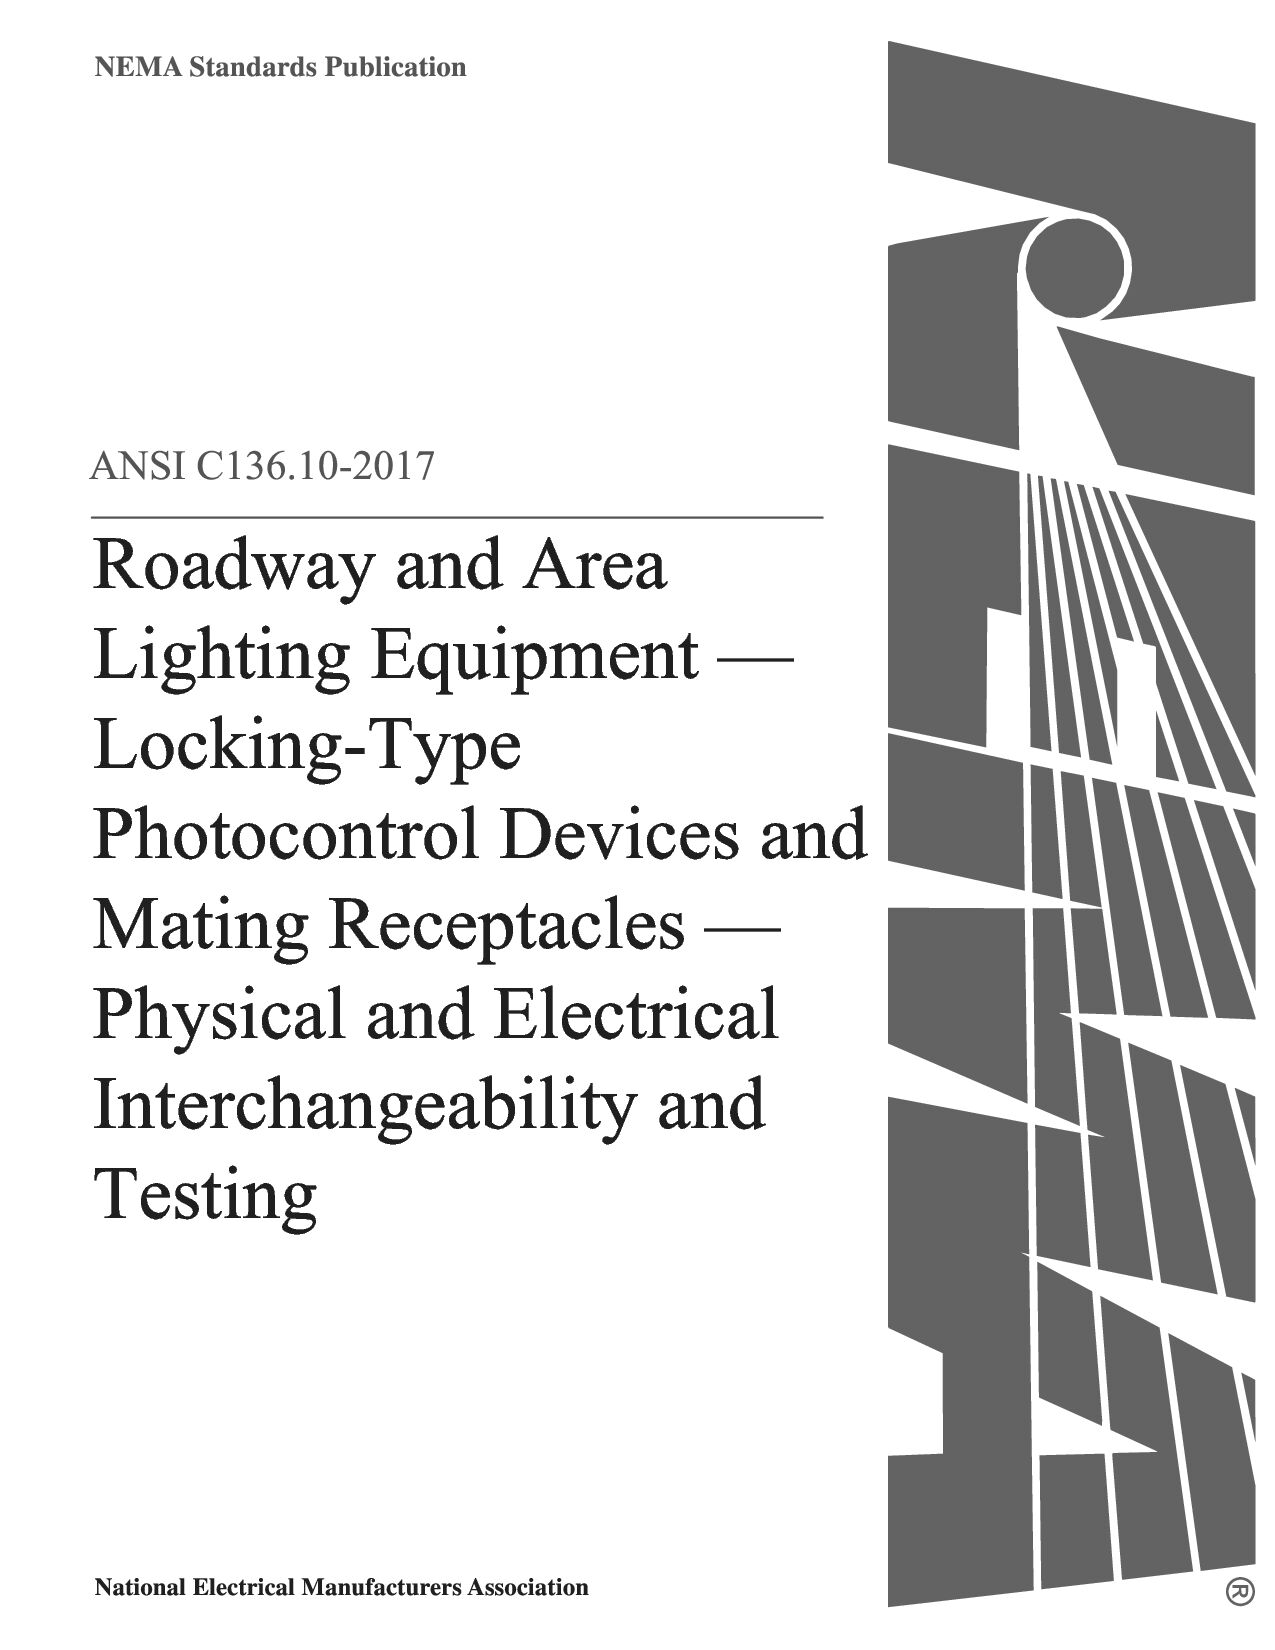 ANSI C136.10-2017